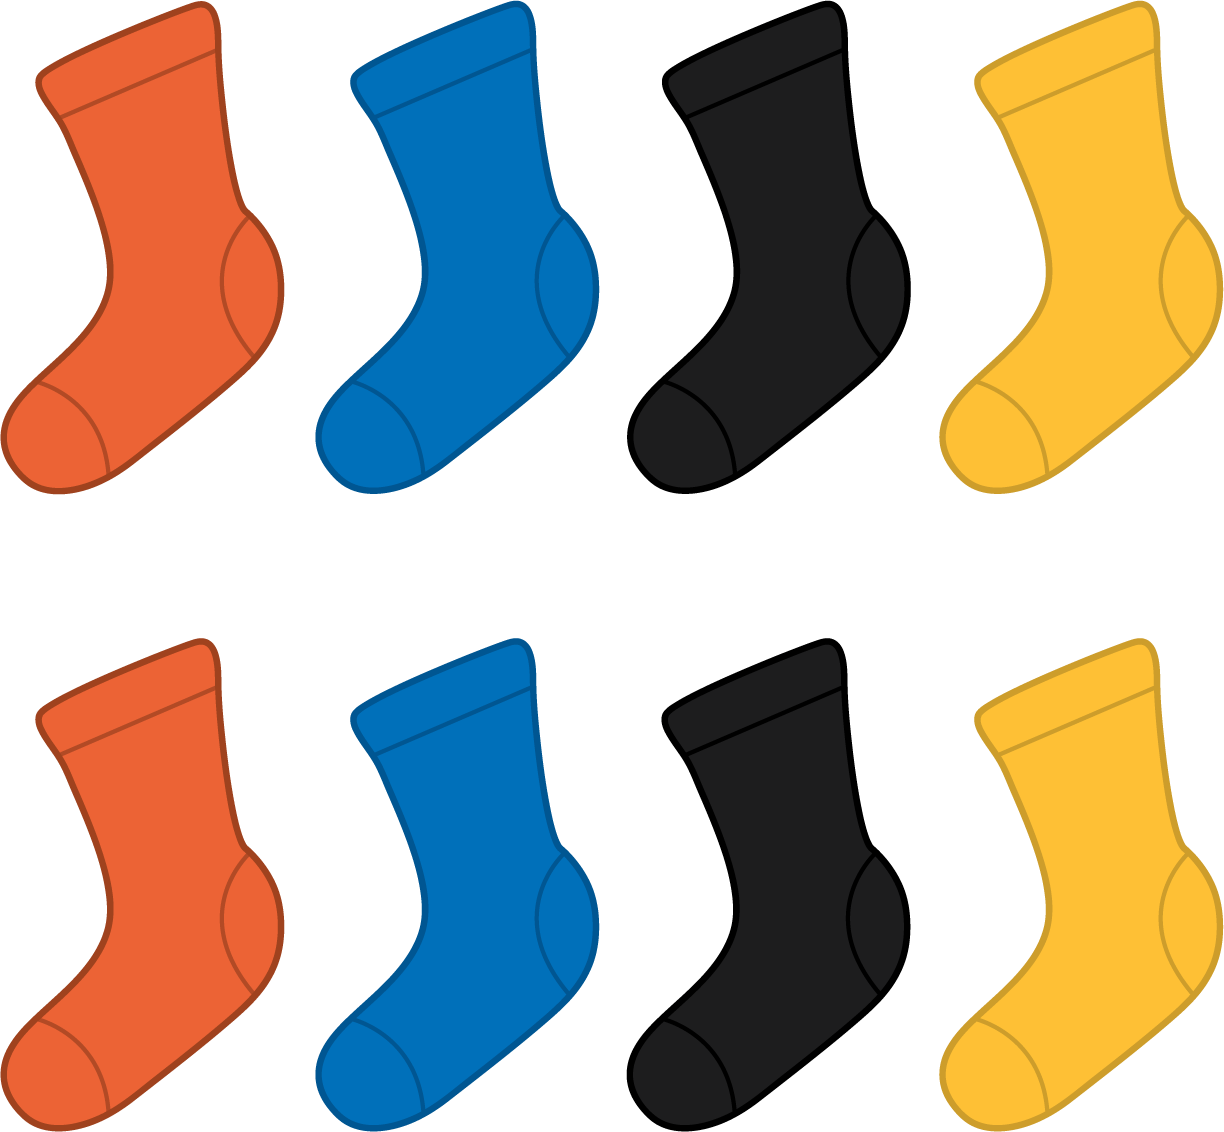 2 rows of 4 socks each